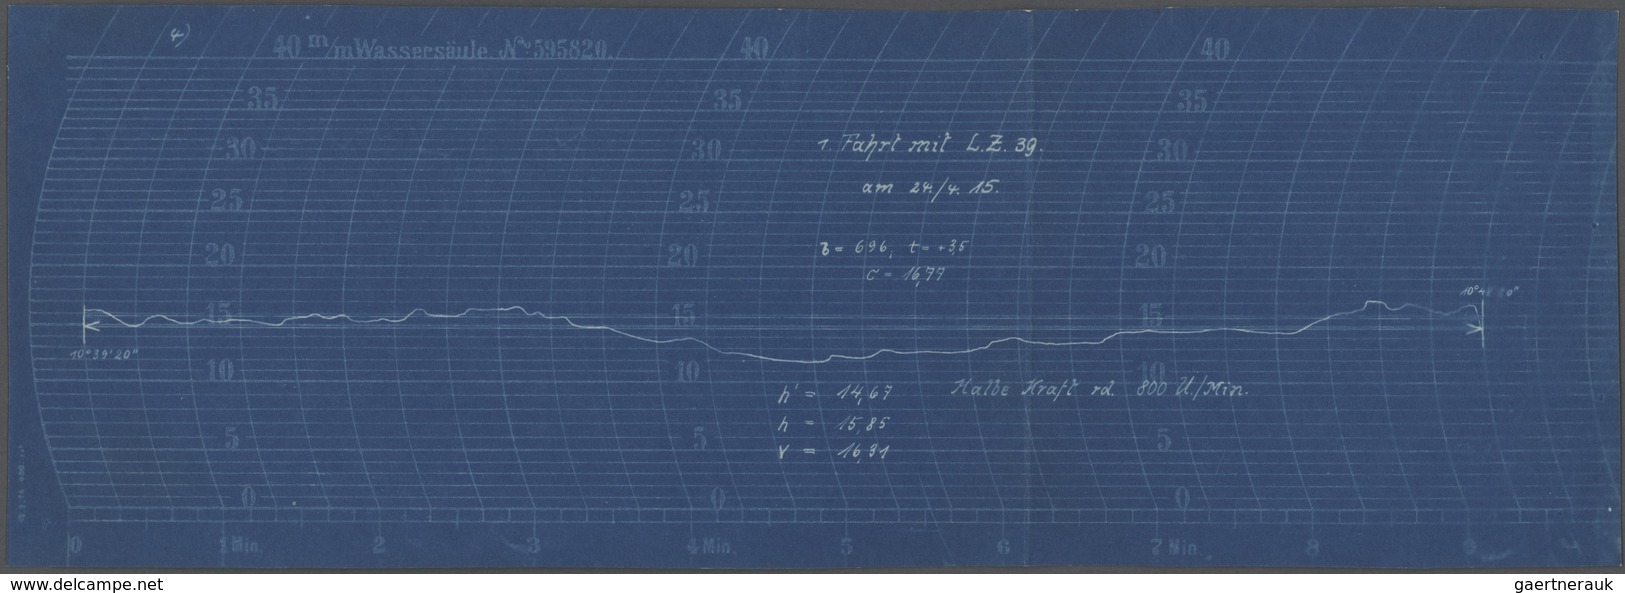 Thematik: Zeppelin / Zeppelin: 1915. Original Zeppelin Barometer Charts From The 1st Flight Of The M - Zeppelins